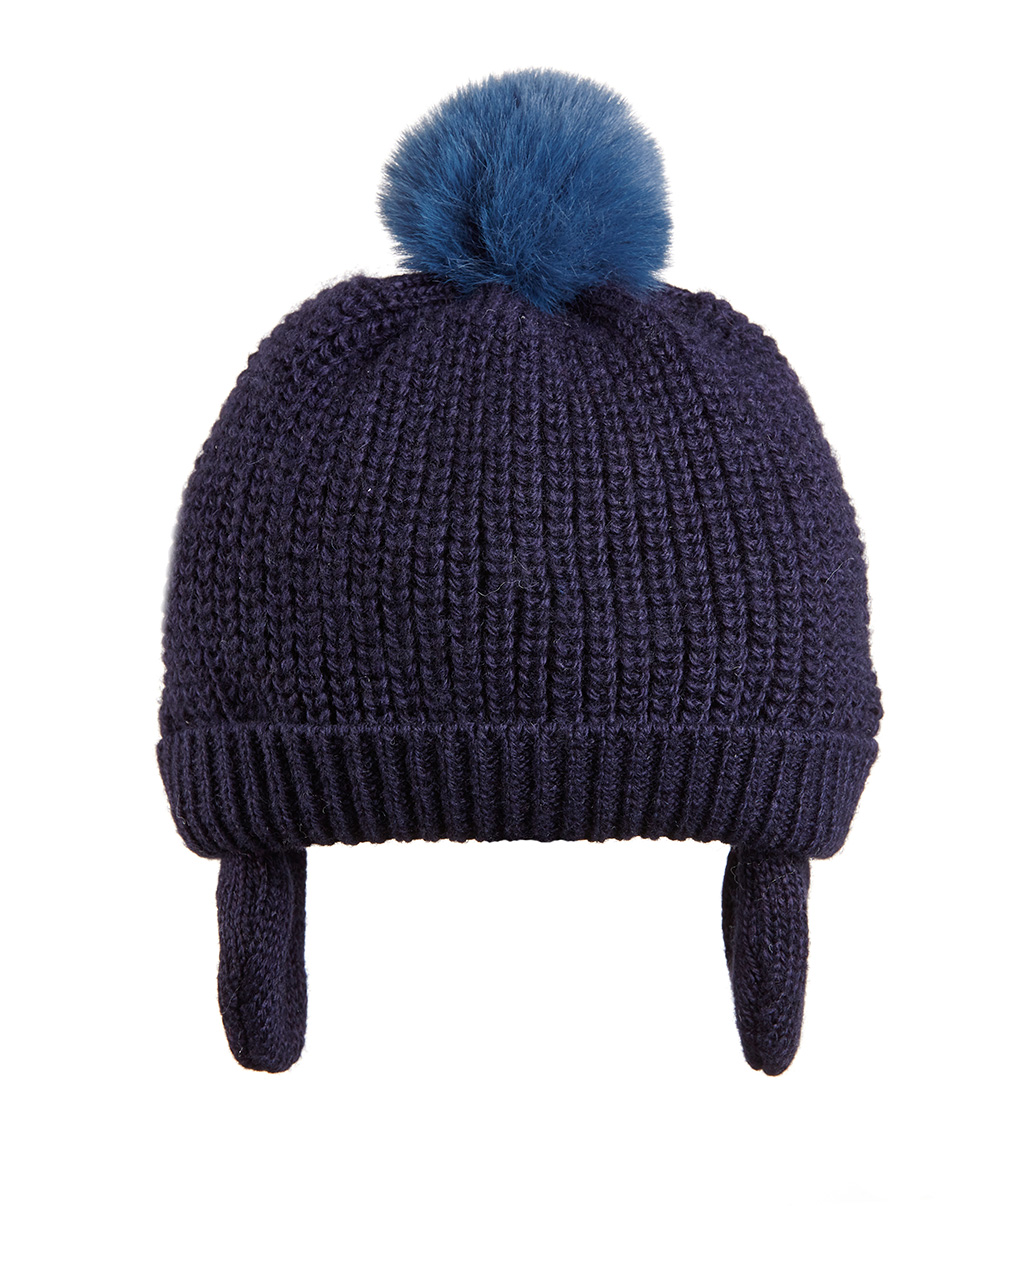 Cappellino tricot misto lana con pon pon pelo